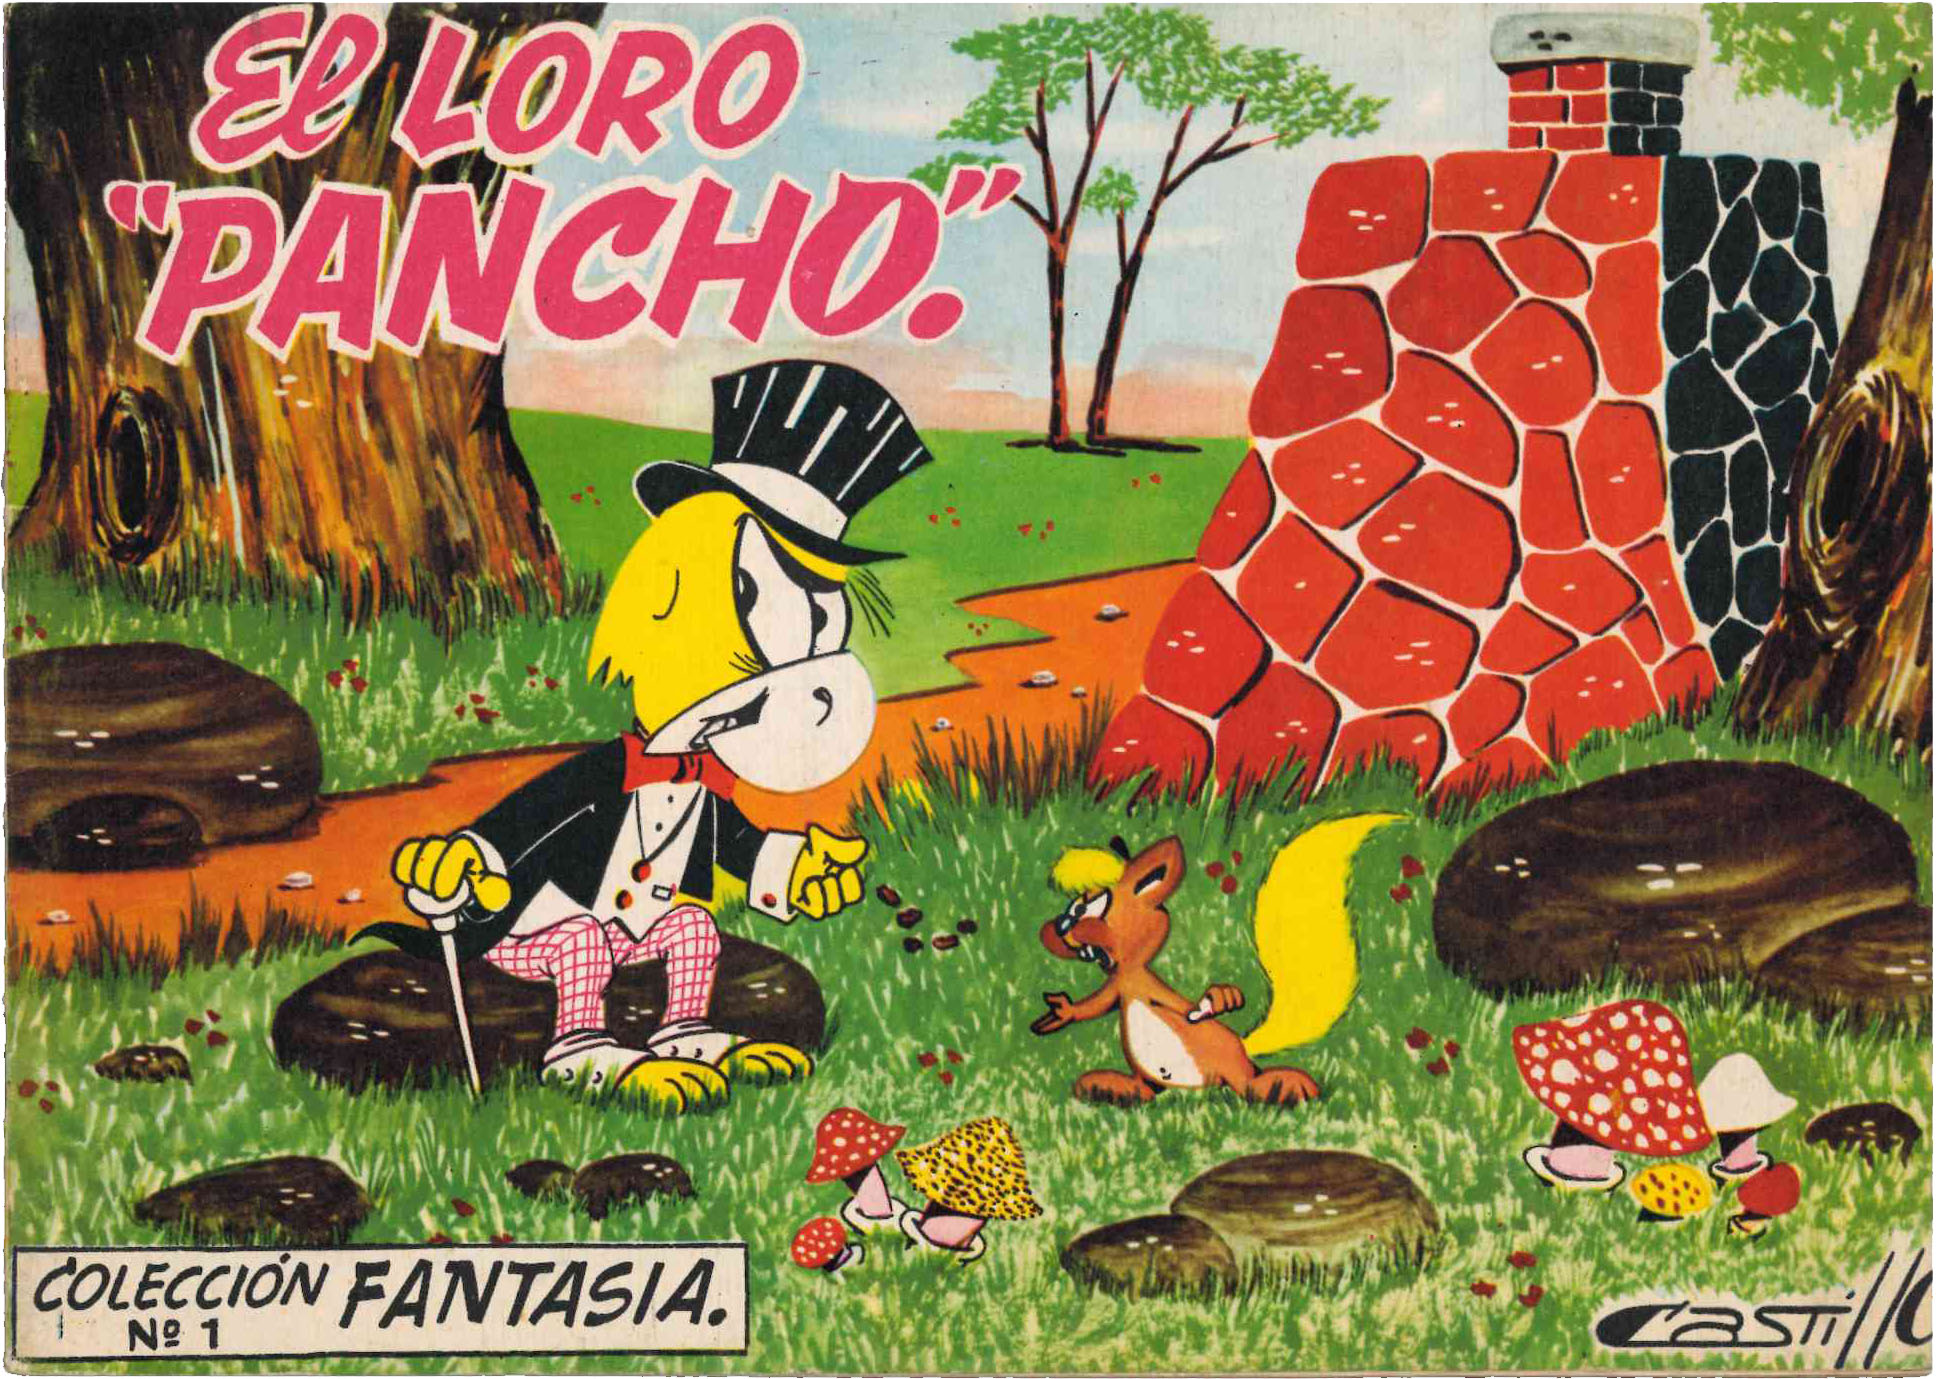 Cuento. Colección Fantasía nº 1. El Loro Pancho. Editorial Olivé y Hontoria. (25X17) RARO